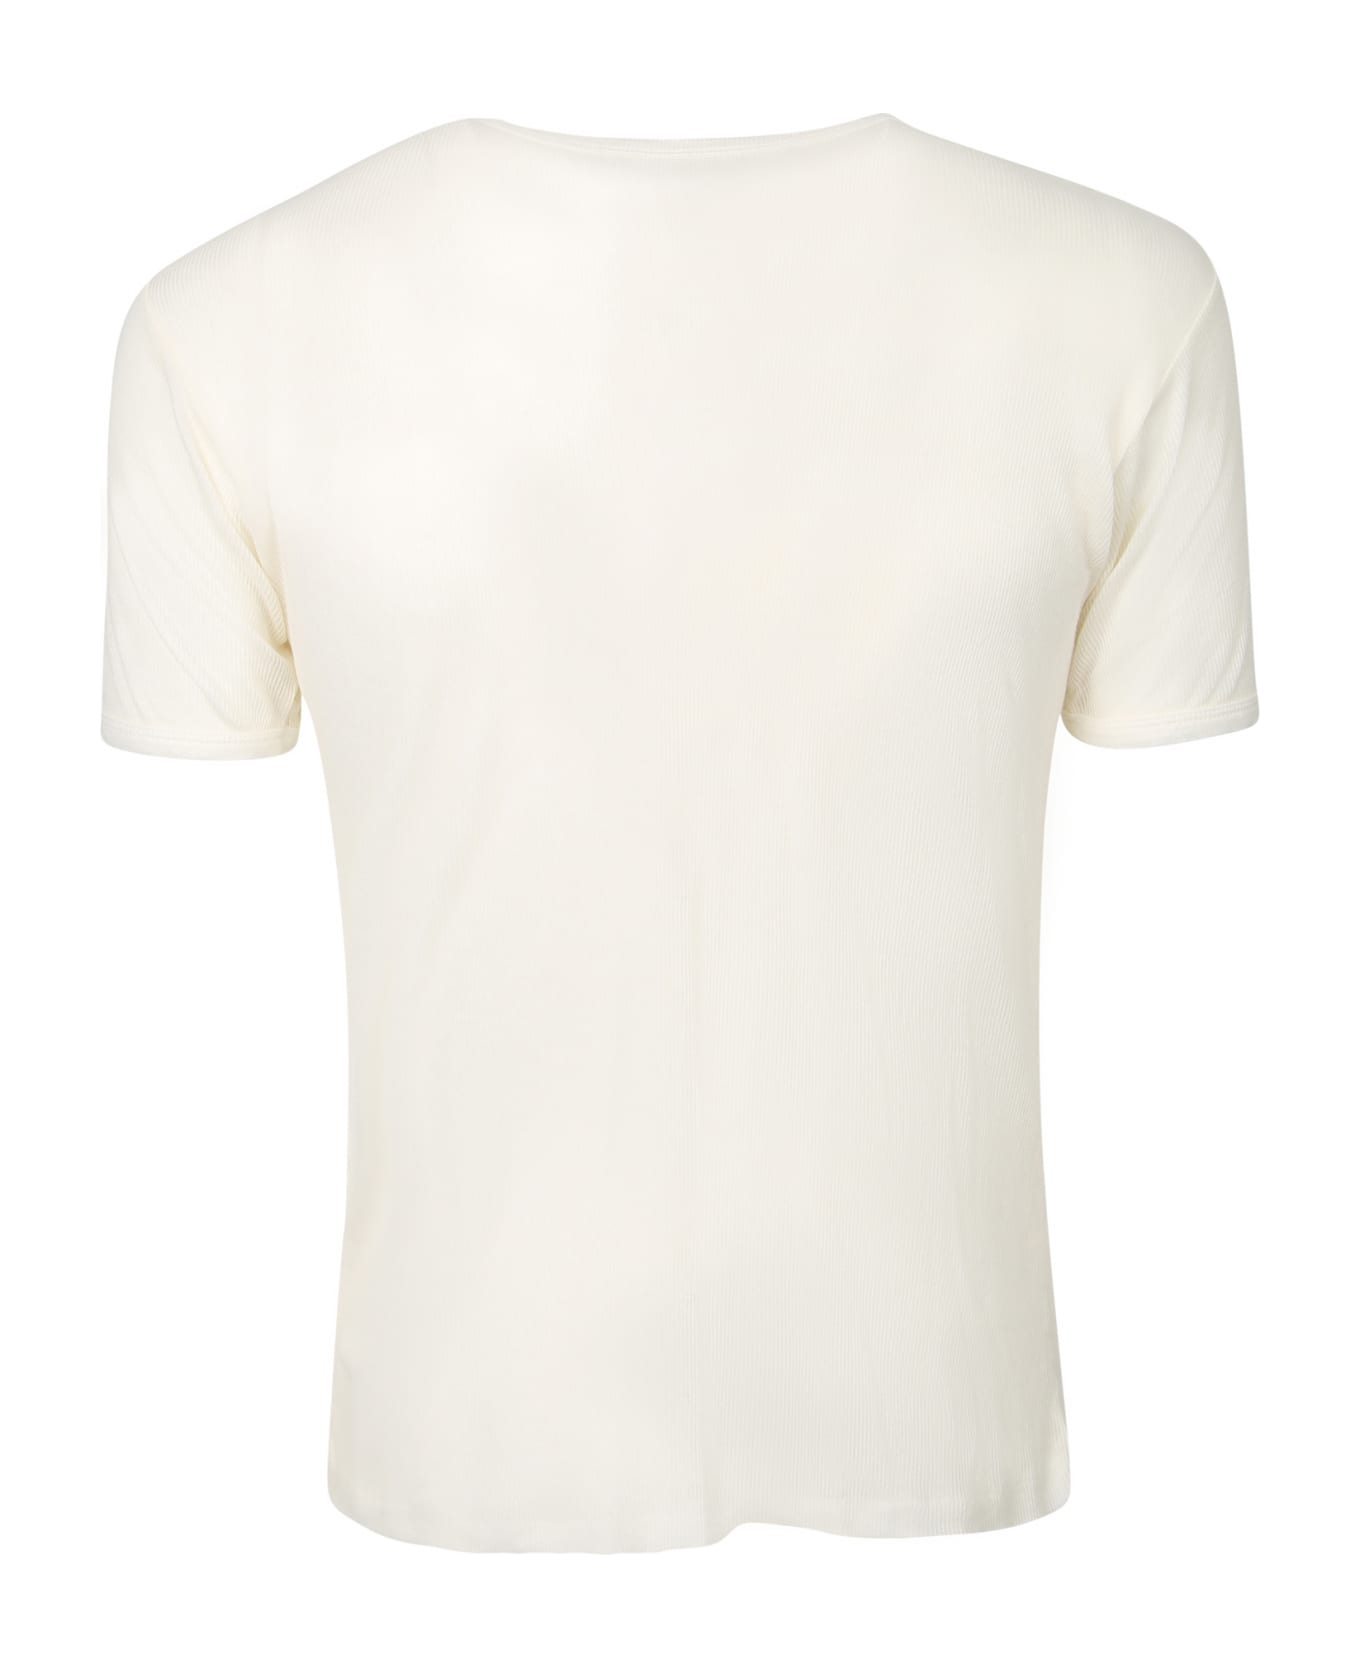 Maison Margiela Cotton T-shirt - White シャツ